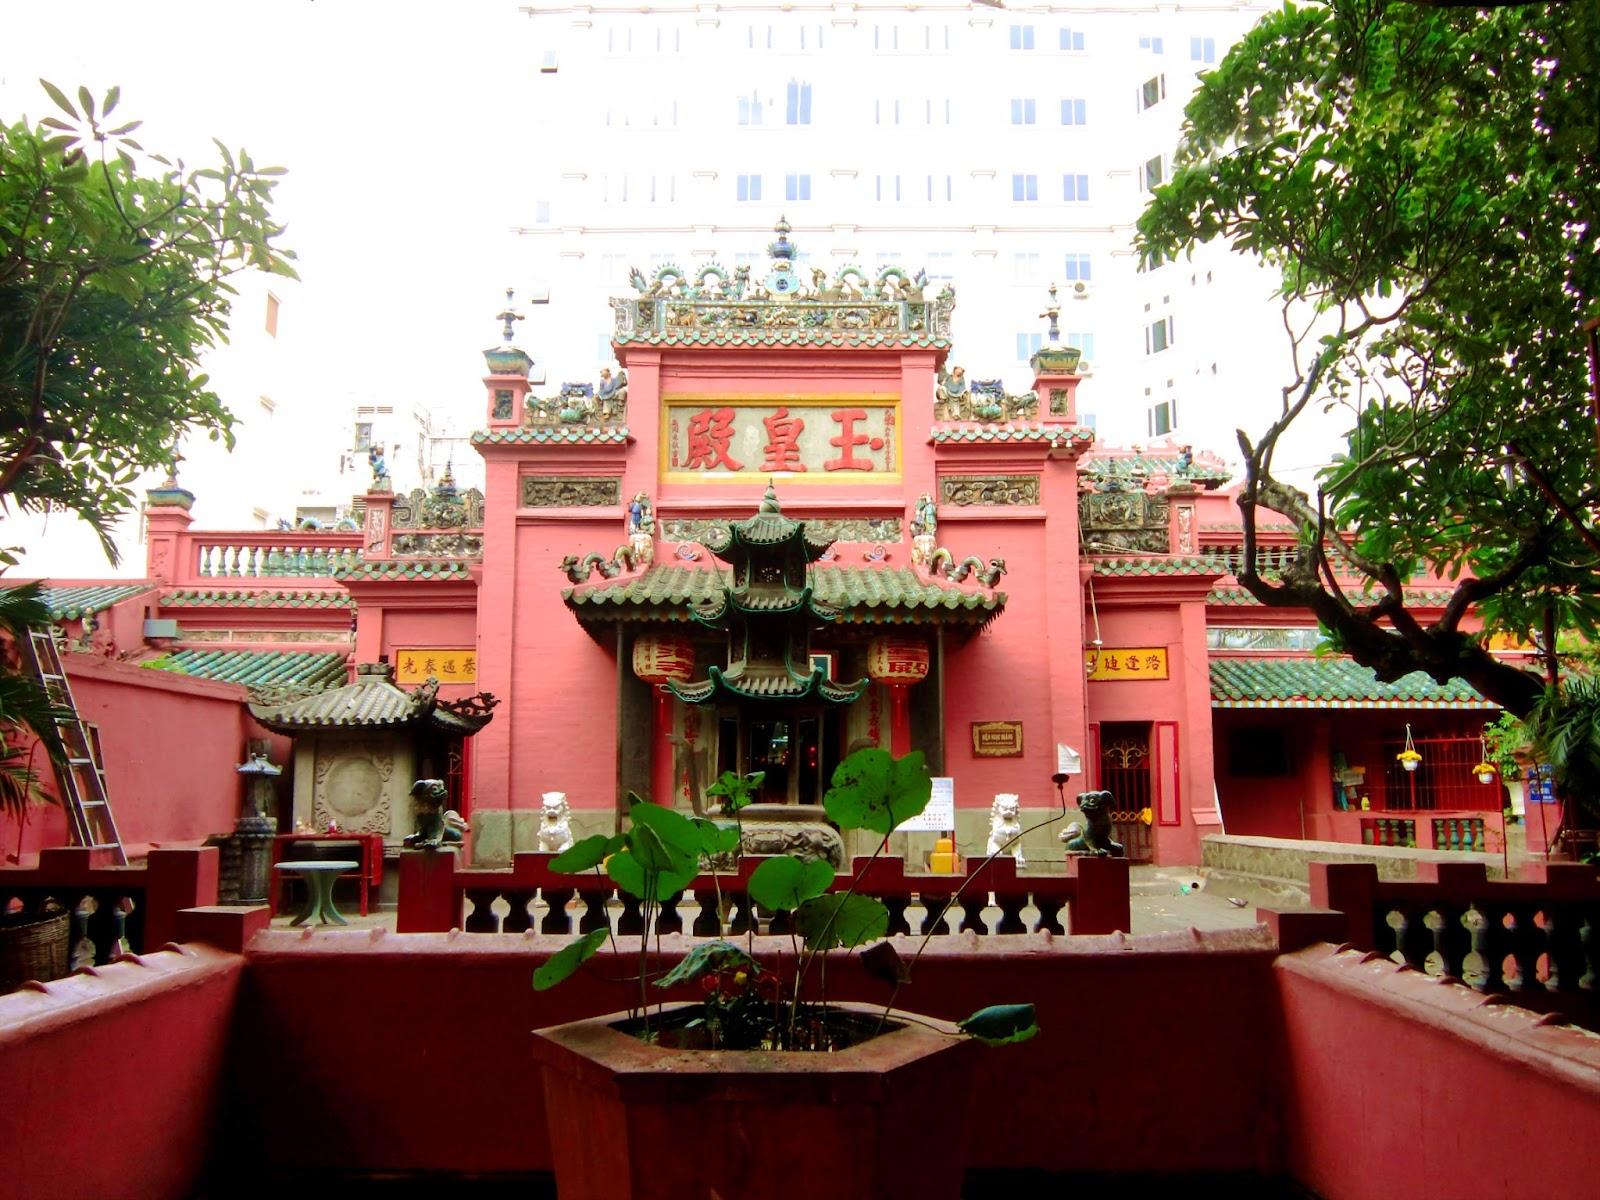 Chùa Ngọc Hoàng - Chùa cầu con, cầu duyên ở TPHCM - Du lịch Thành phố Hồ Chí Minh - Sống động từng trải nghiệm!